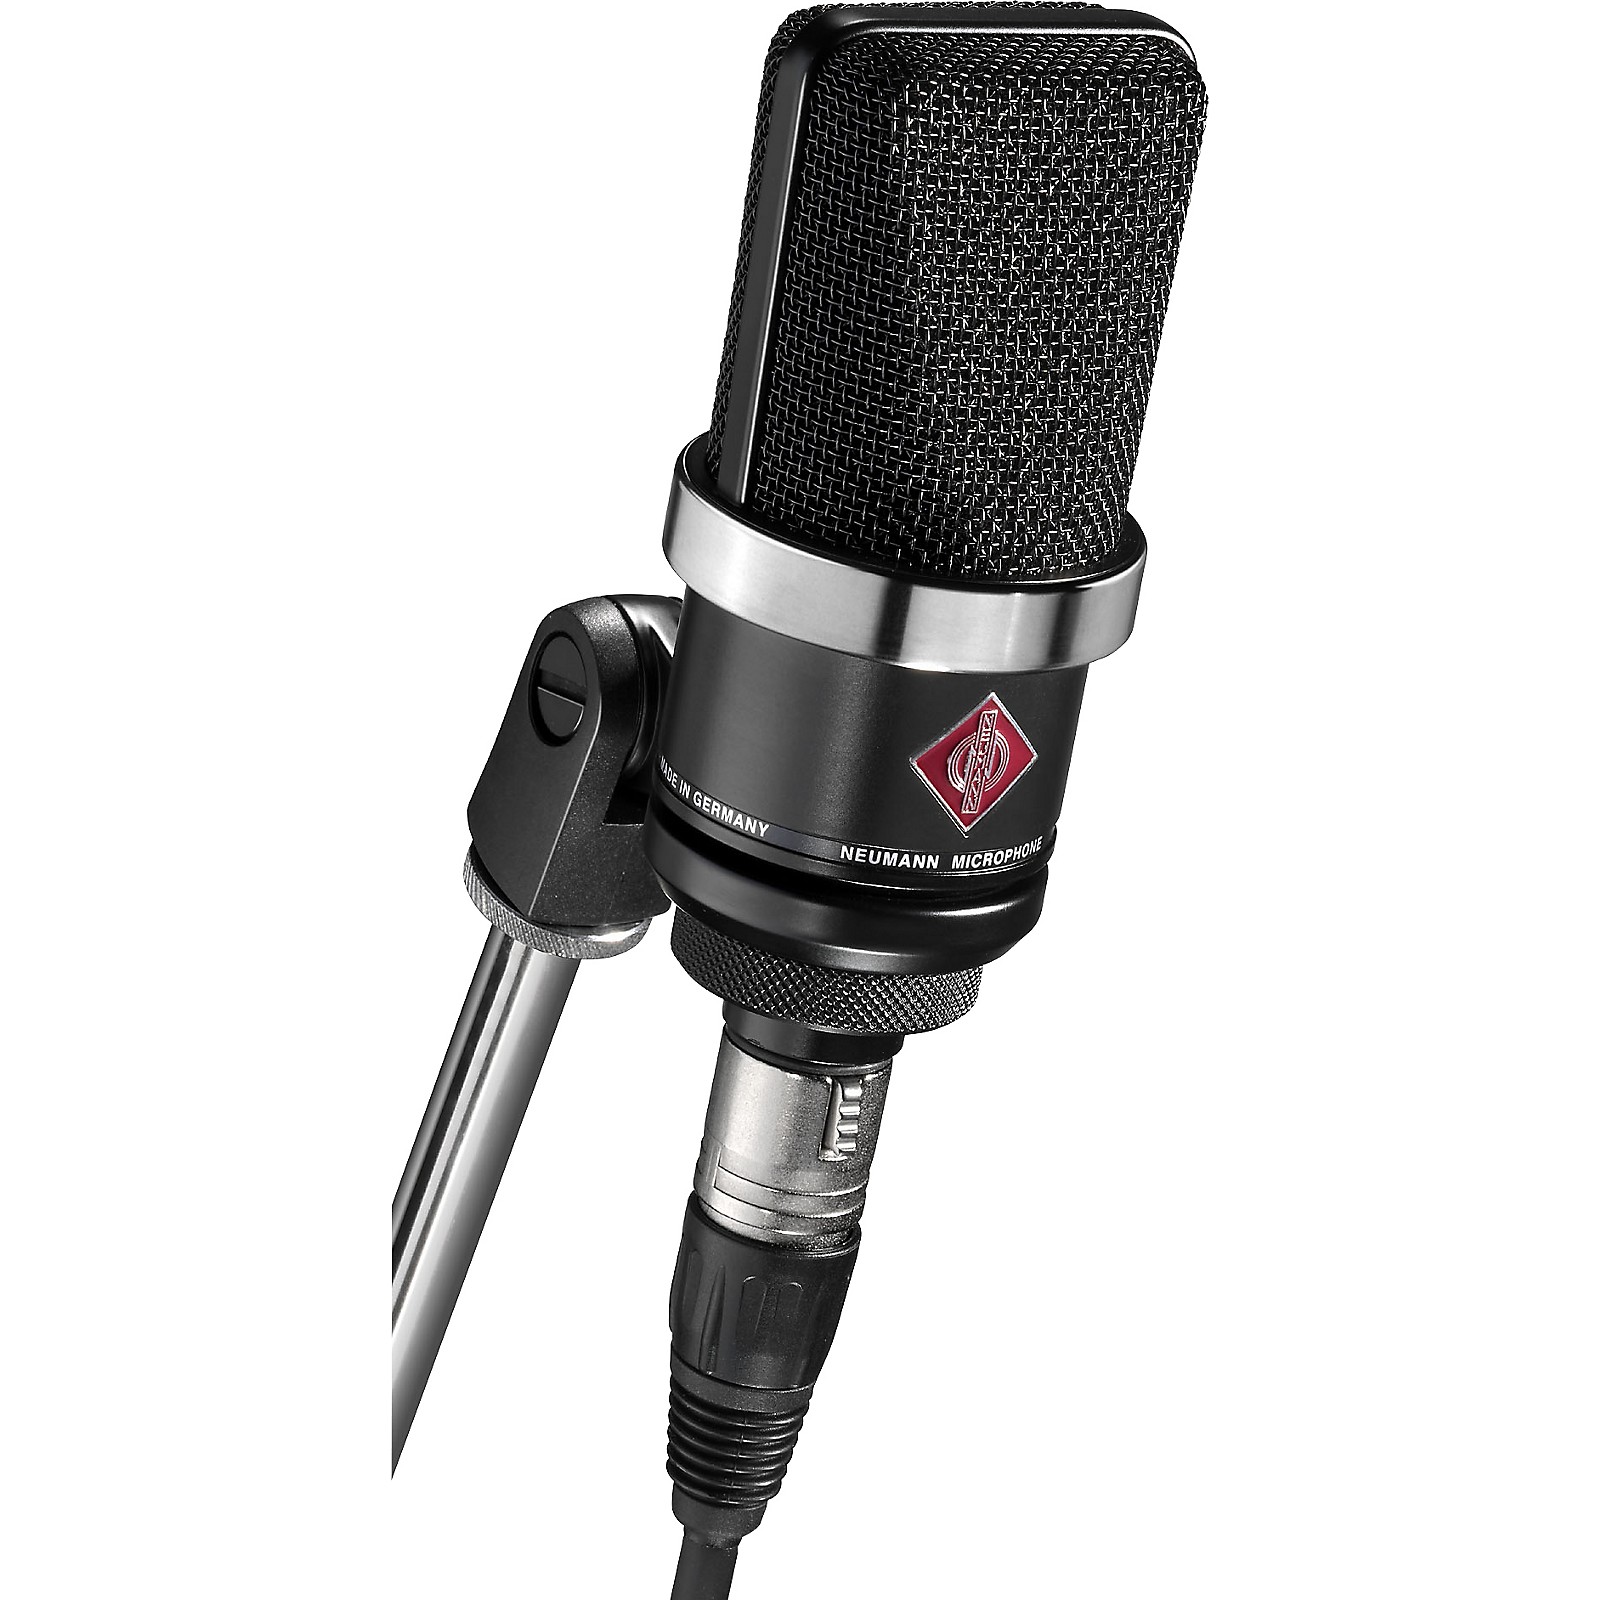 Mount Bank Ajustamiento enfermedad Neumann TLM 102 Condenser Microphone Matte Black | Guitar Center